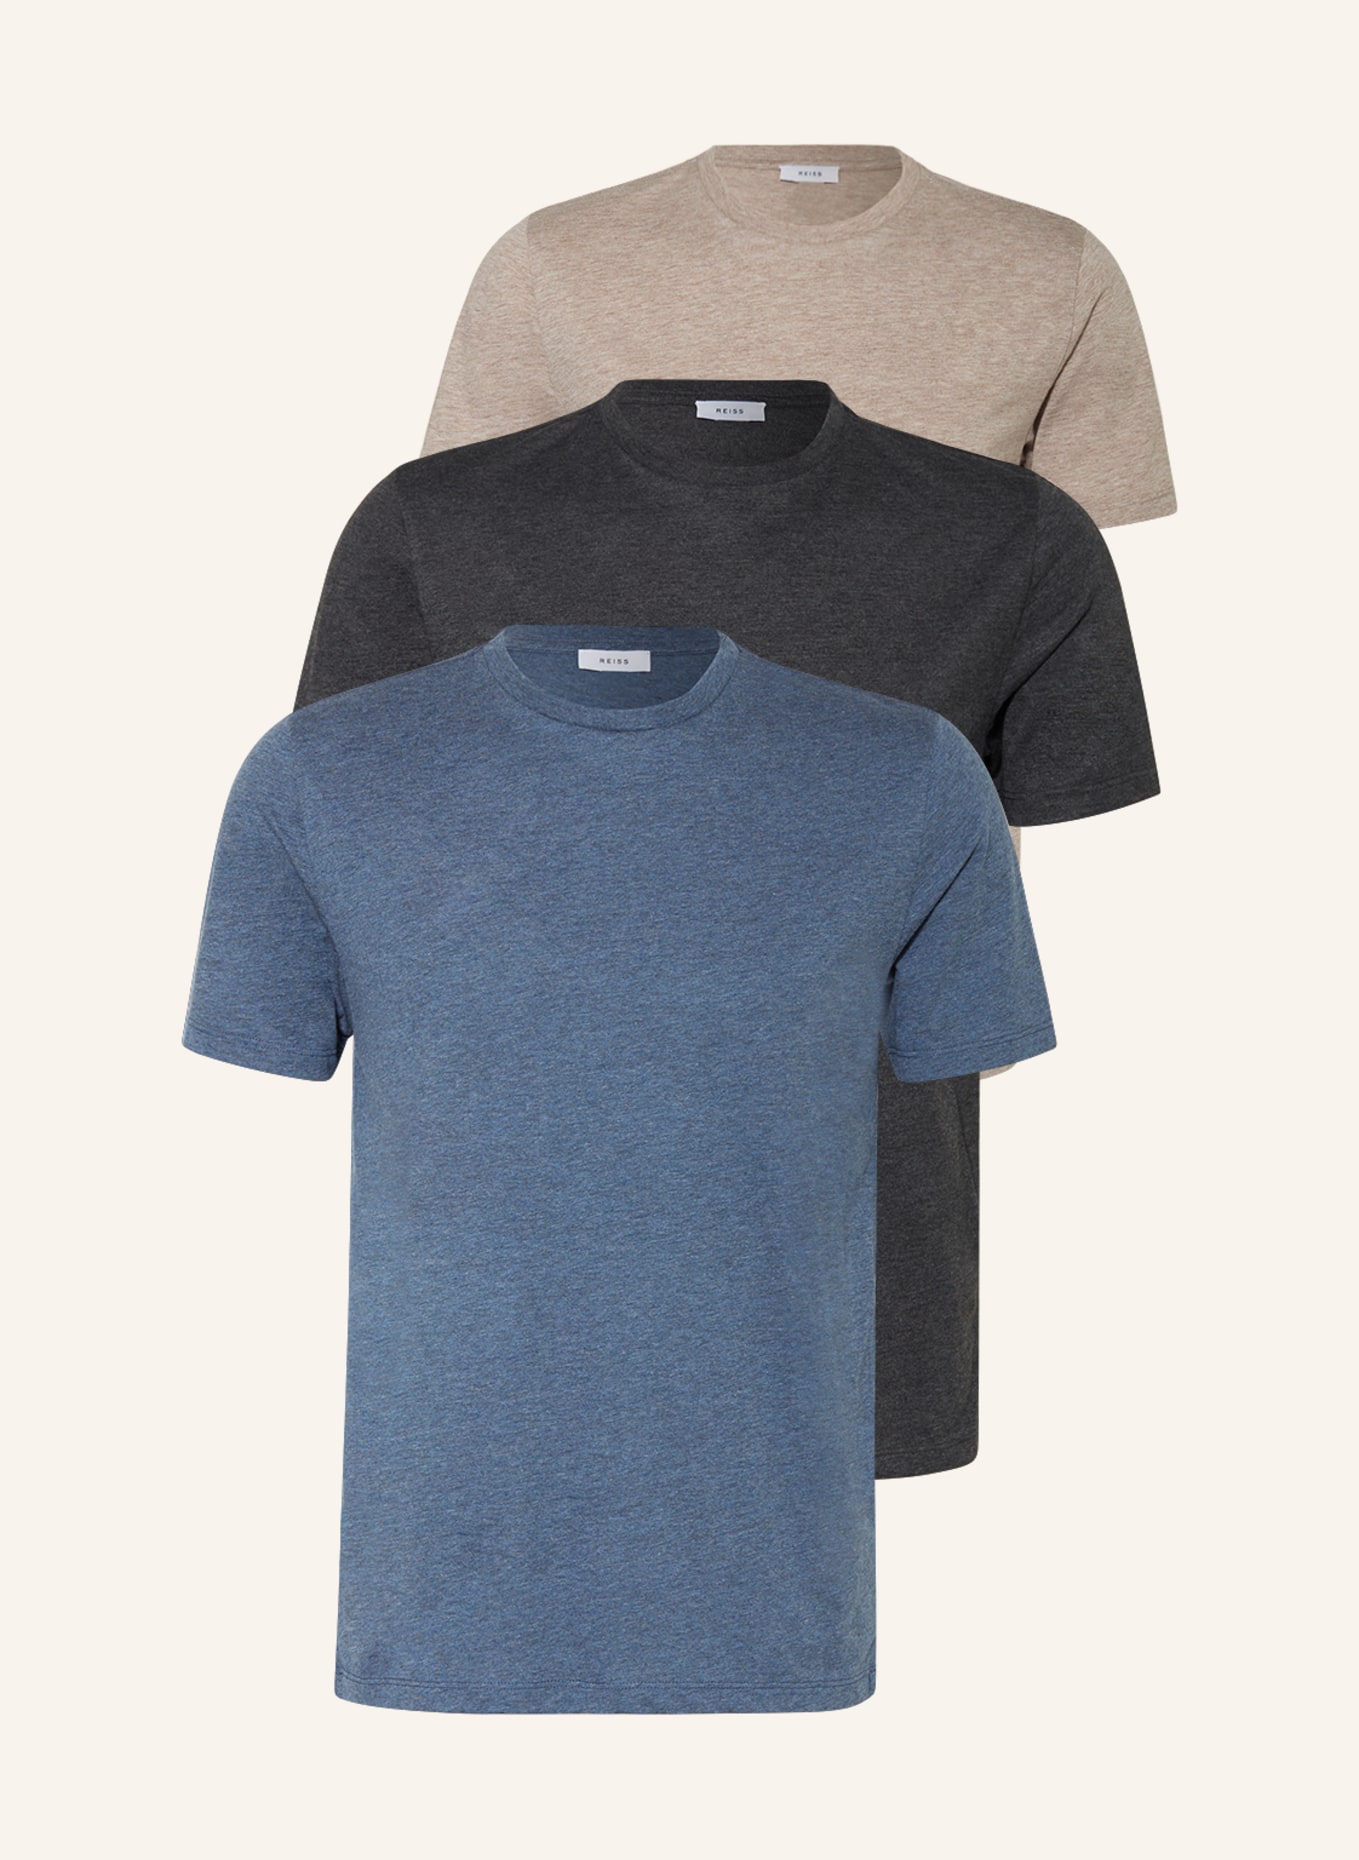 REISS 3er-Pack T-Shirts BLESS, Farbe: BLAU/ DUNKELGRAU/ TAUPE (Bild 1)